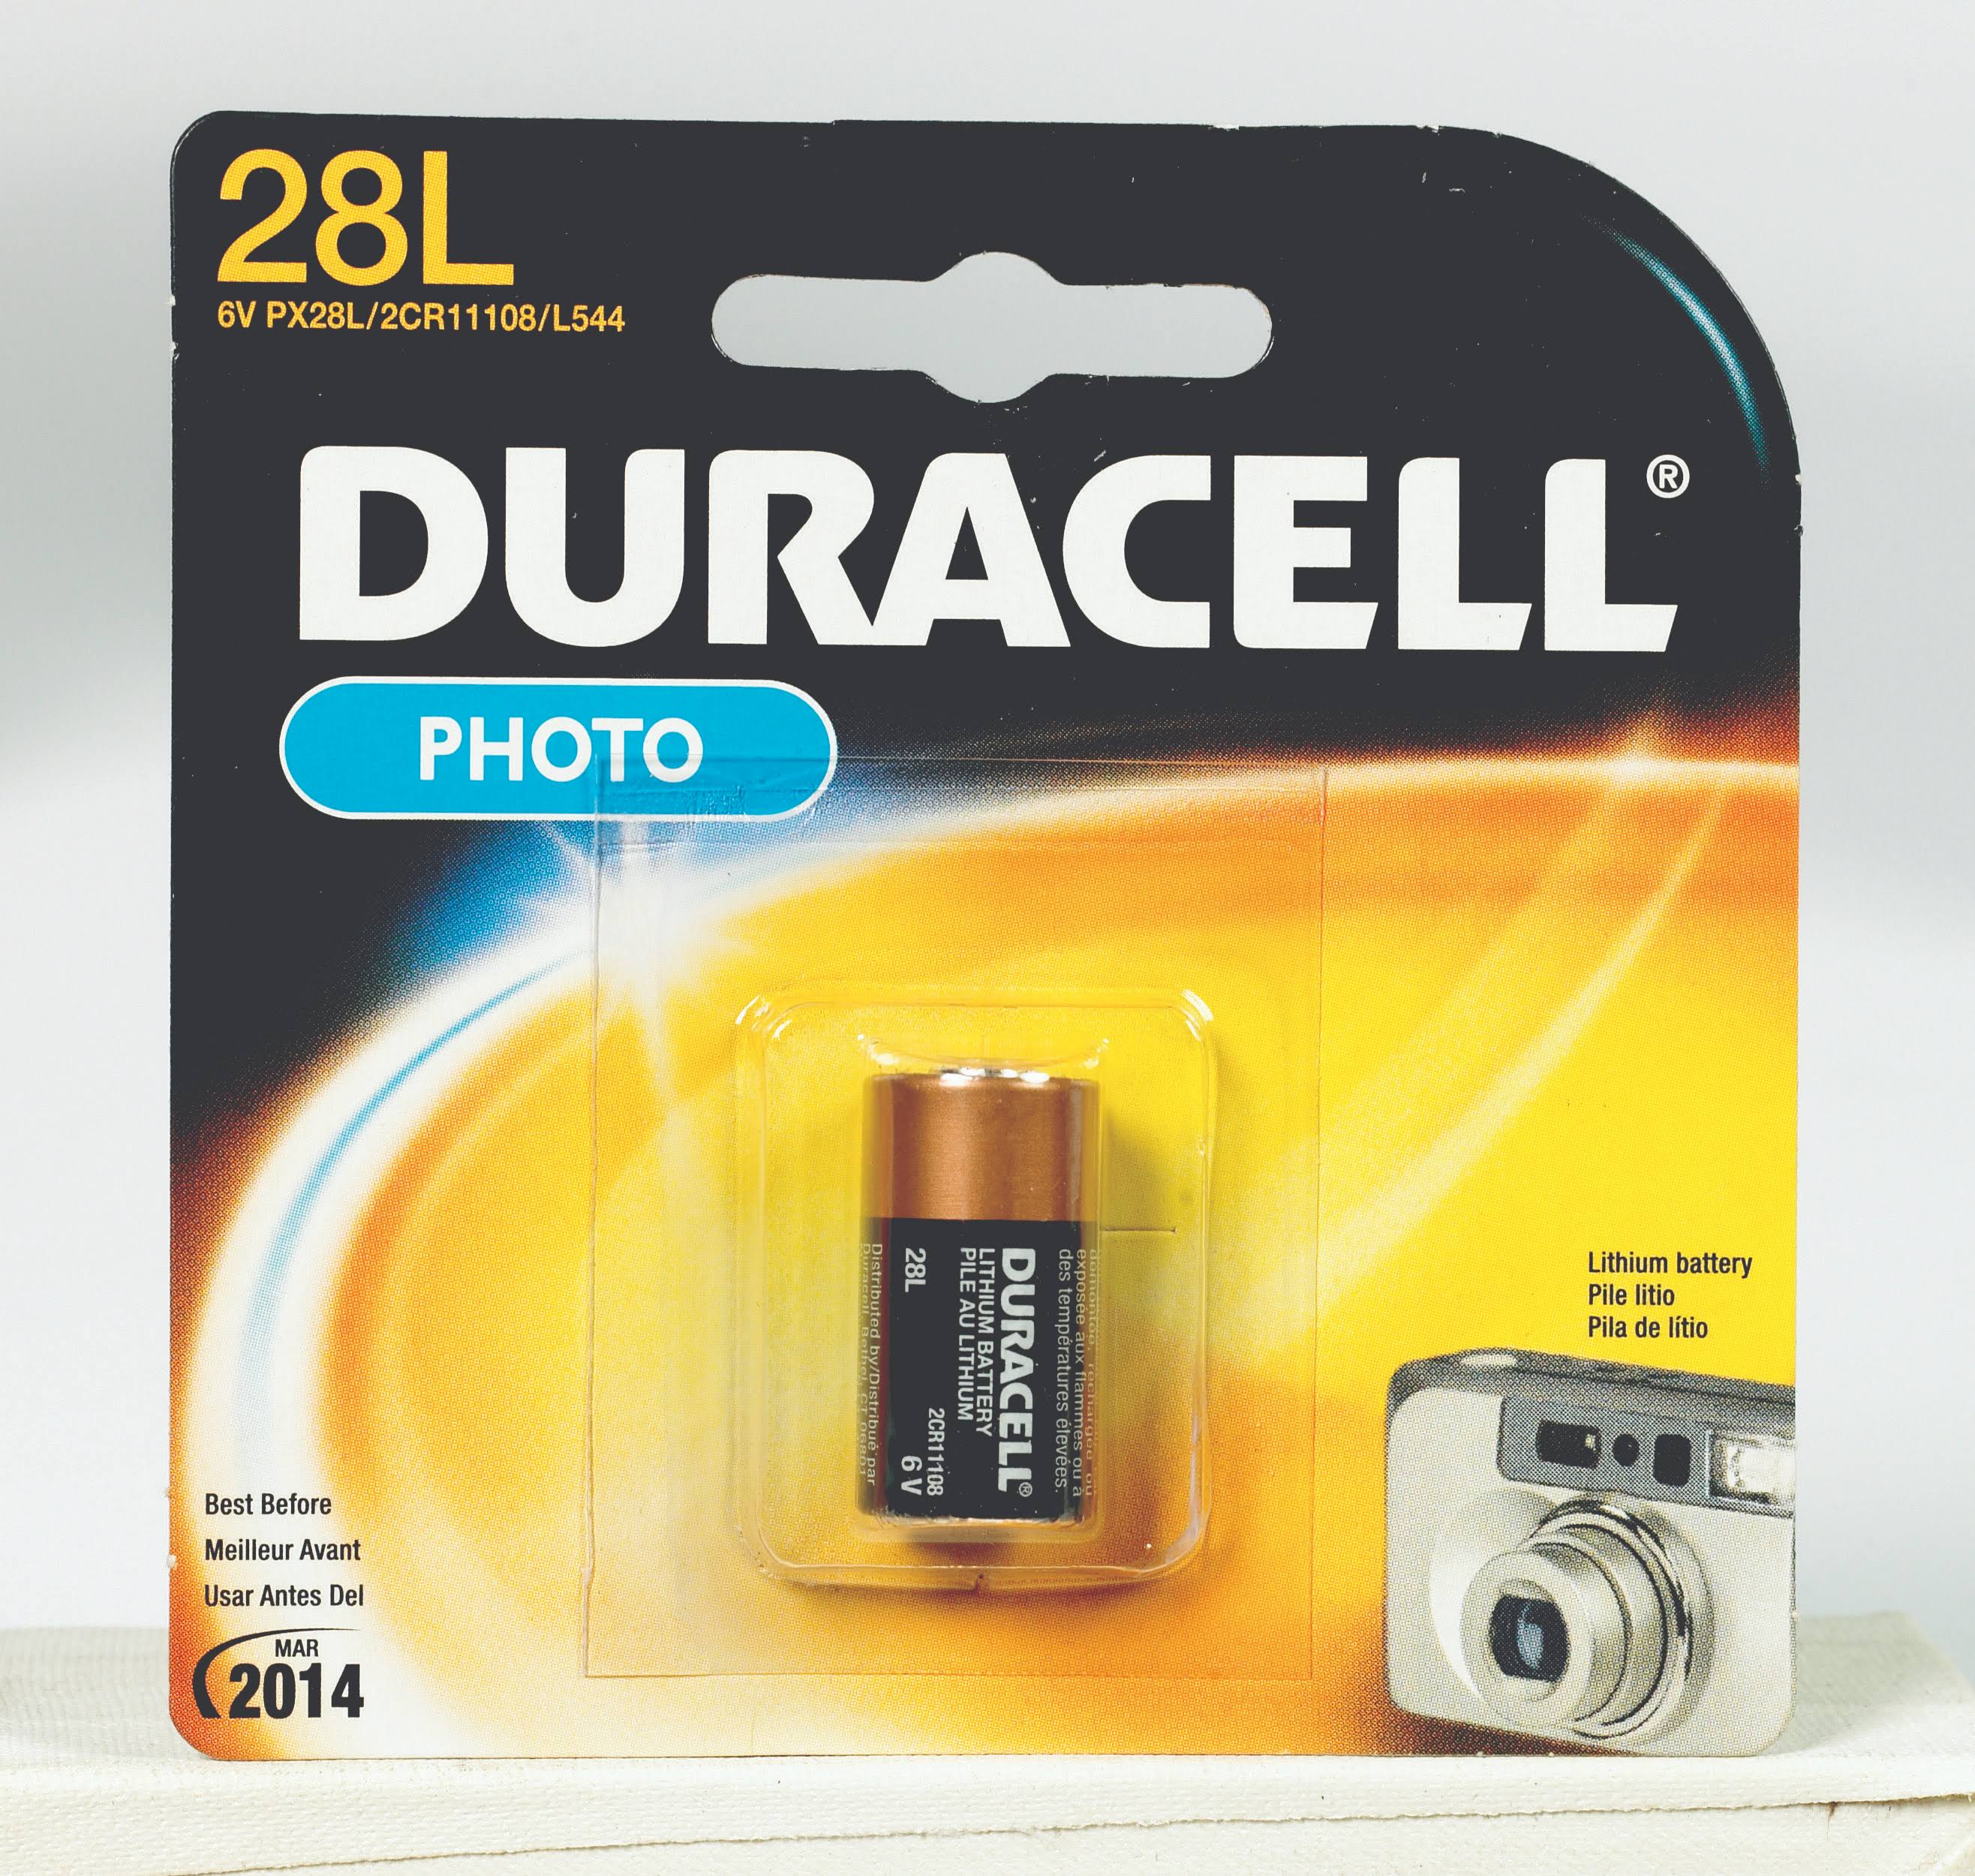 Duracell 28L Battery - 6V